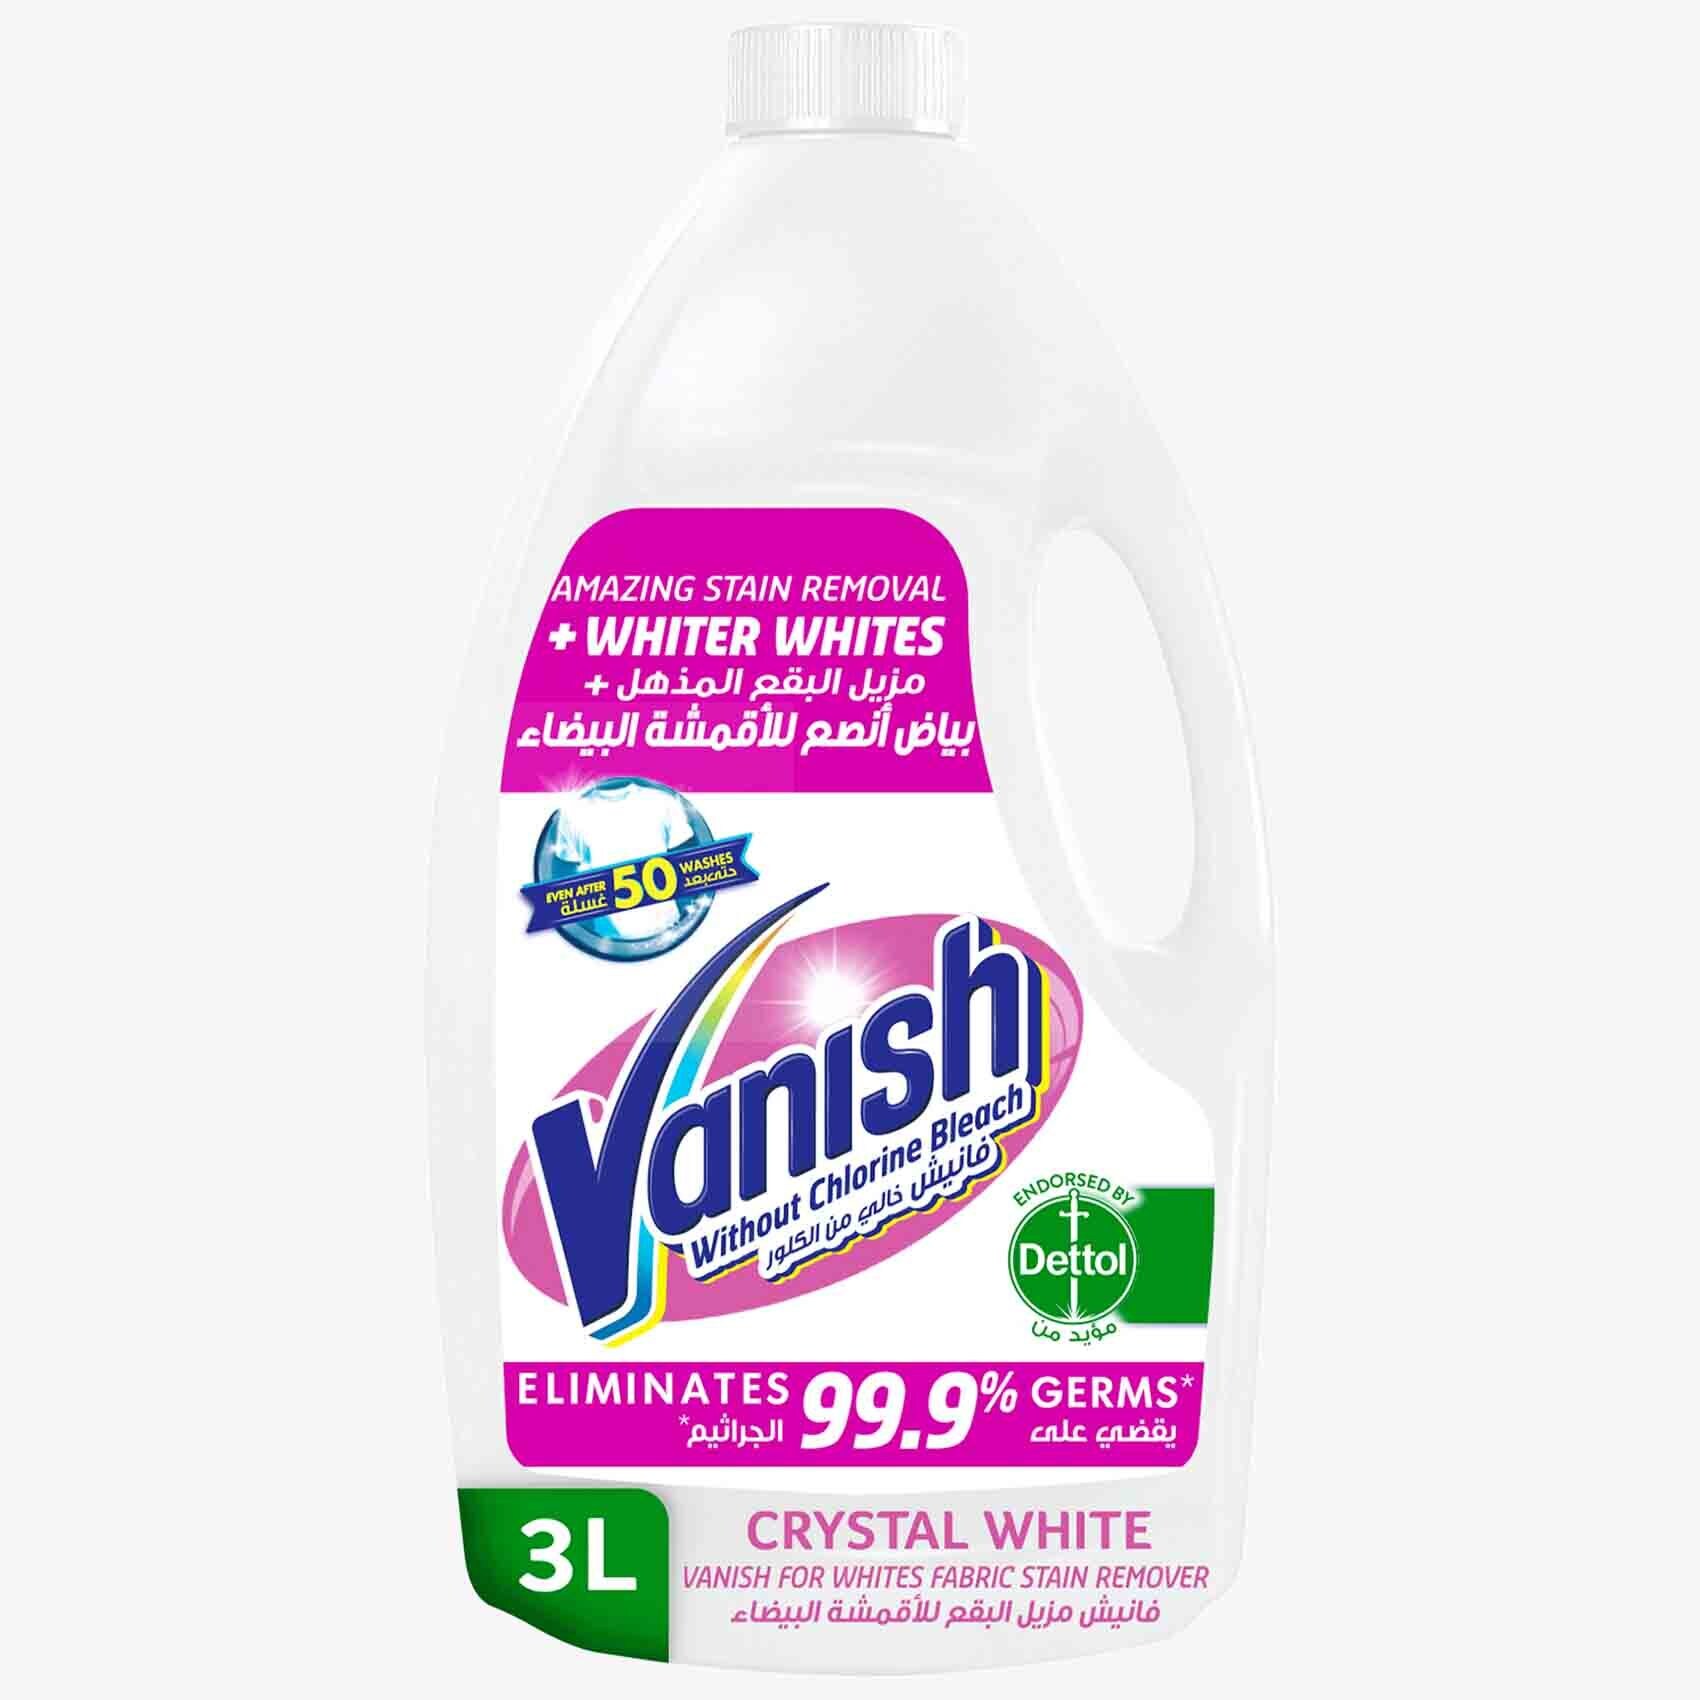 Vanish Fabric Whiteners - Buy the Best Whitener Today